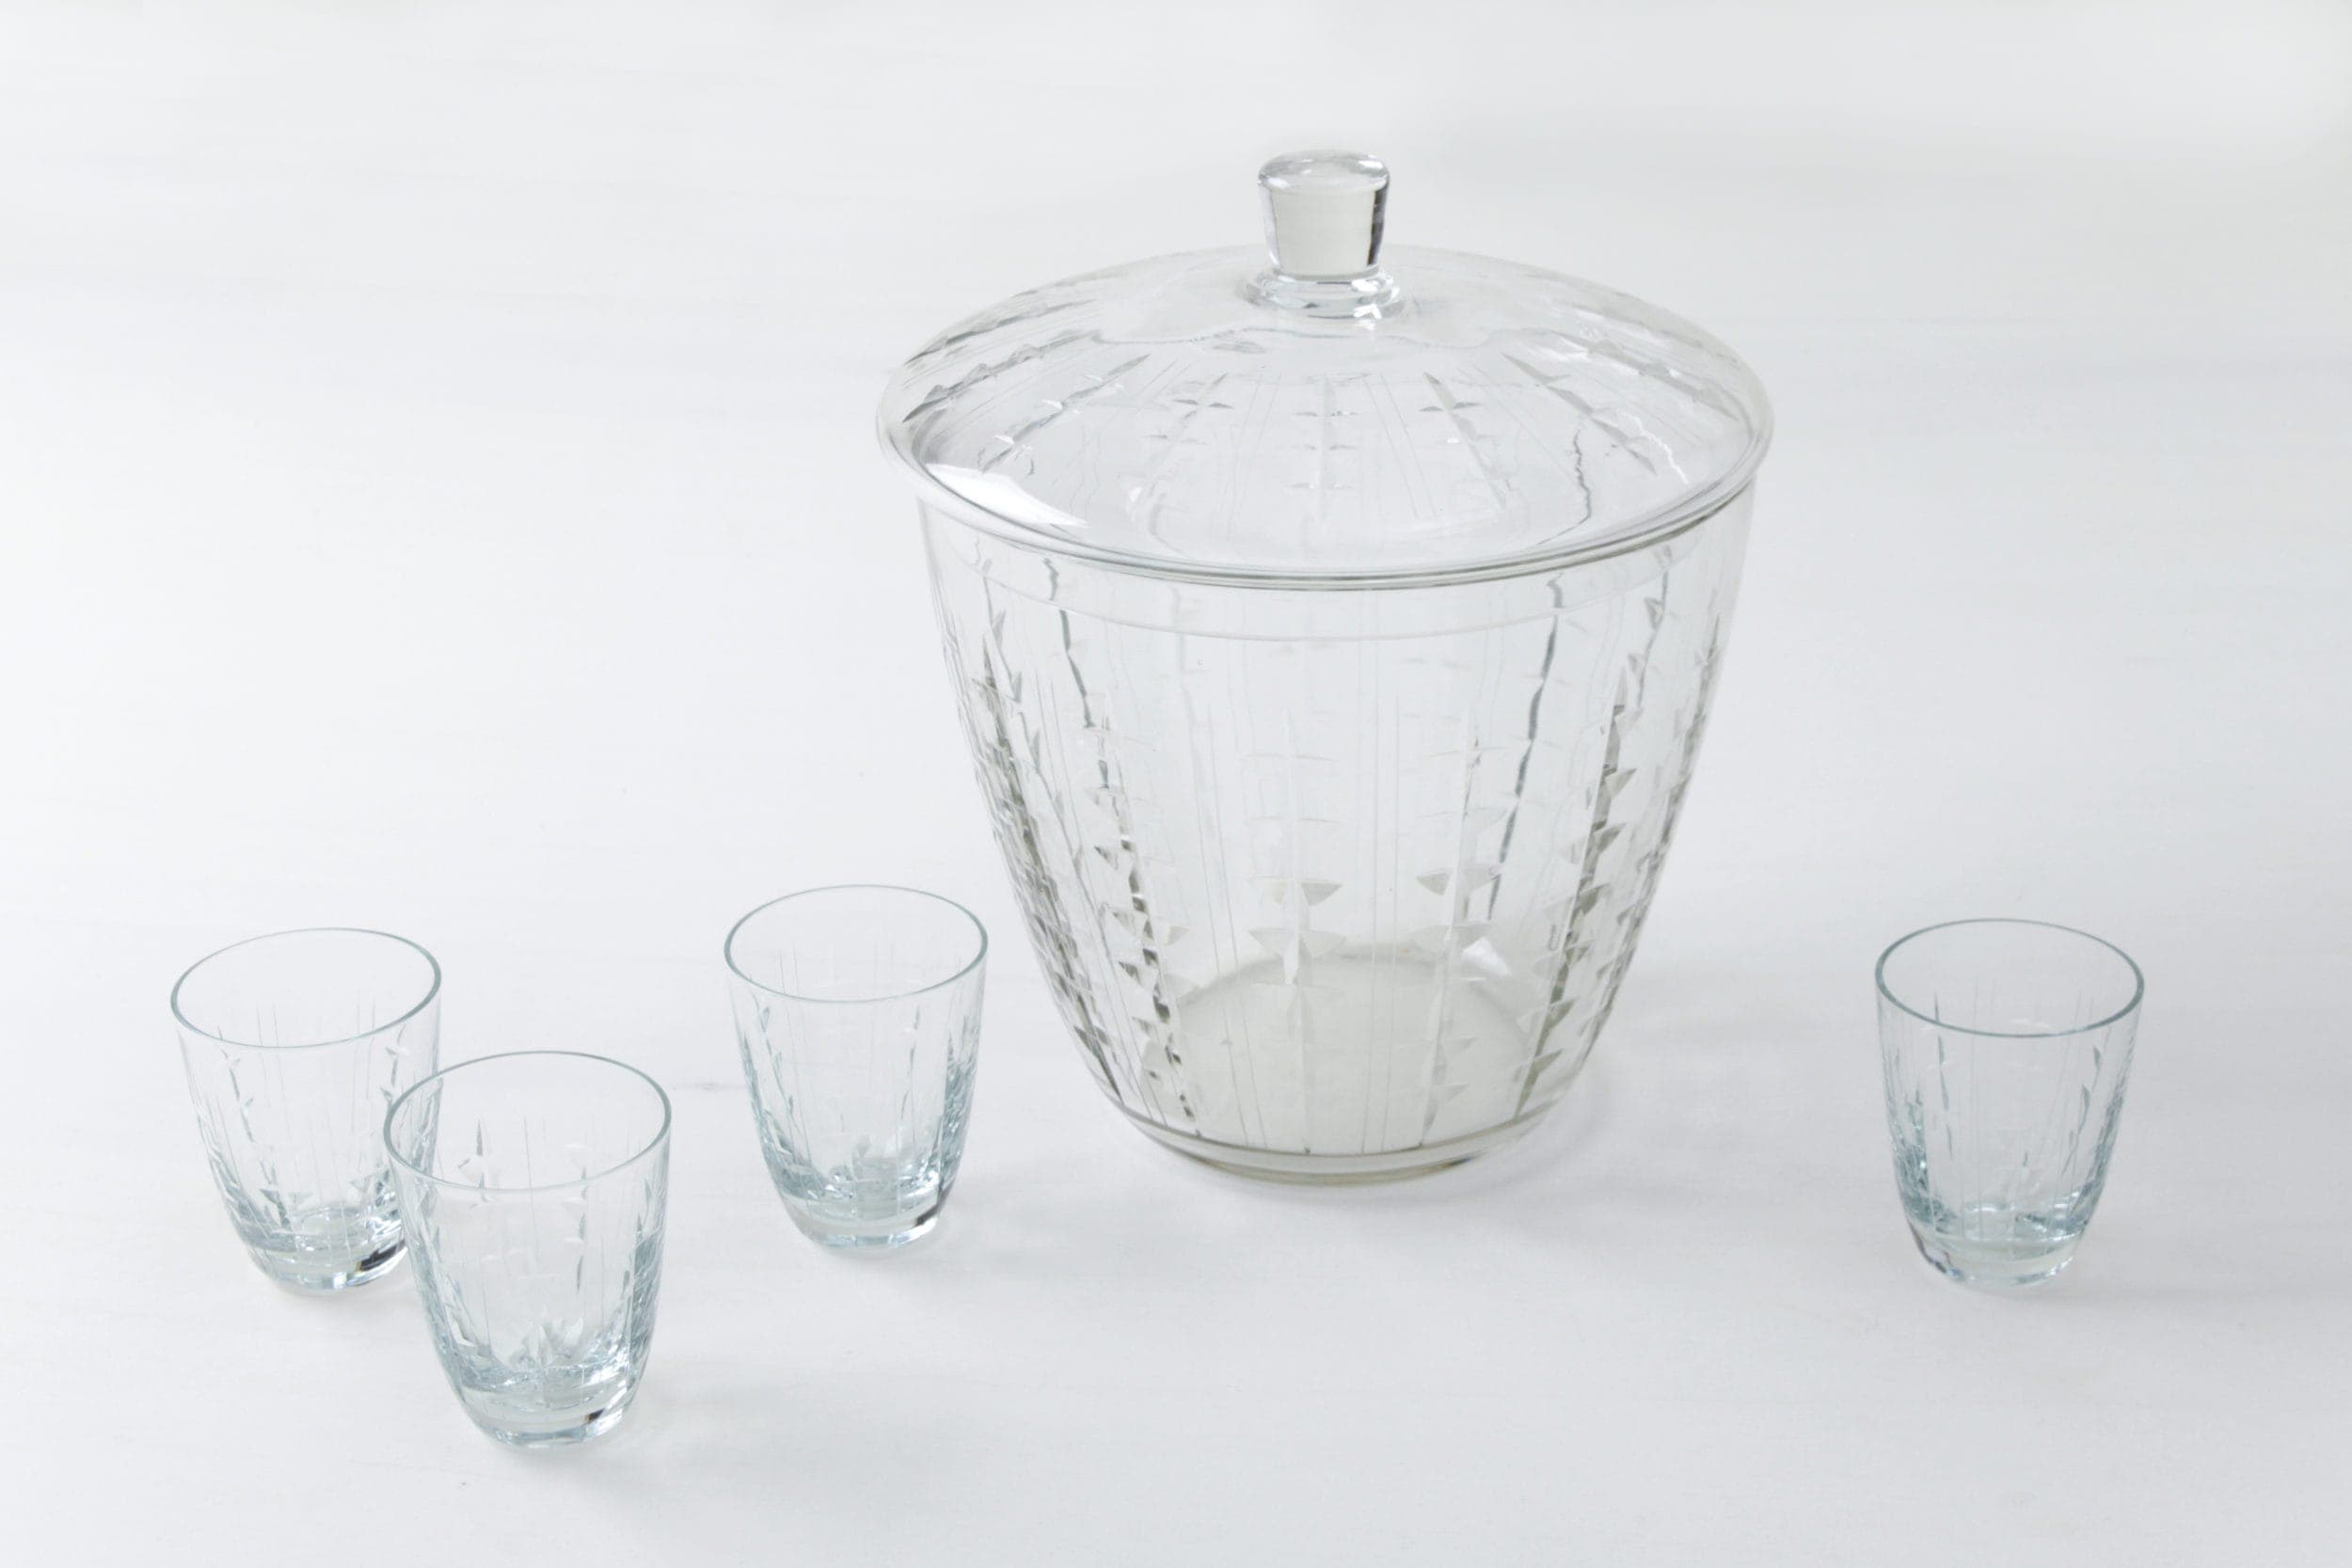 Gläser, Flaschen, Glasartikel, Glas Bowle mieten